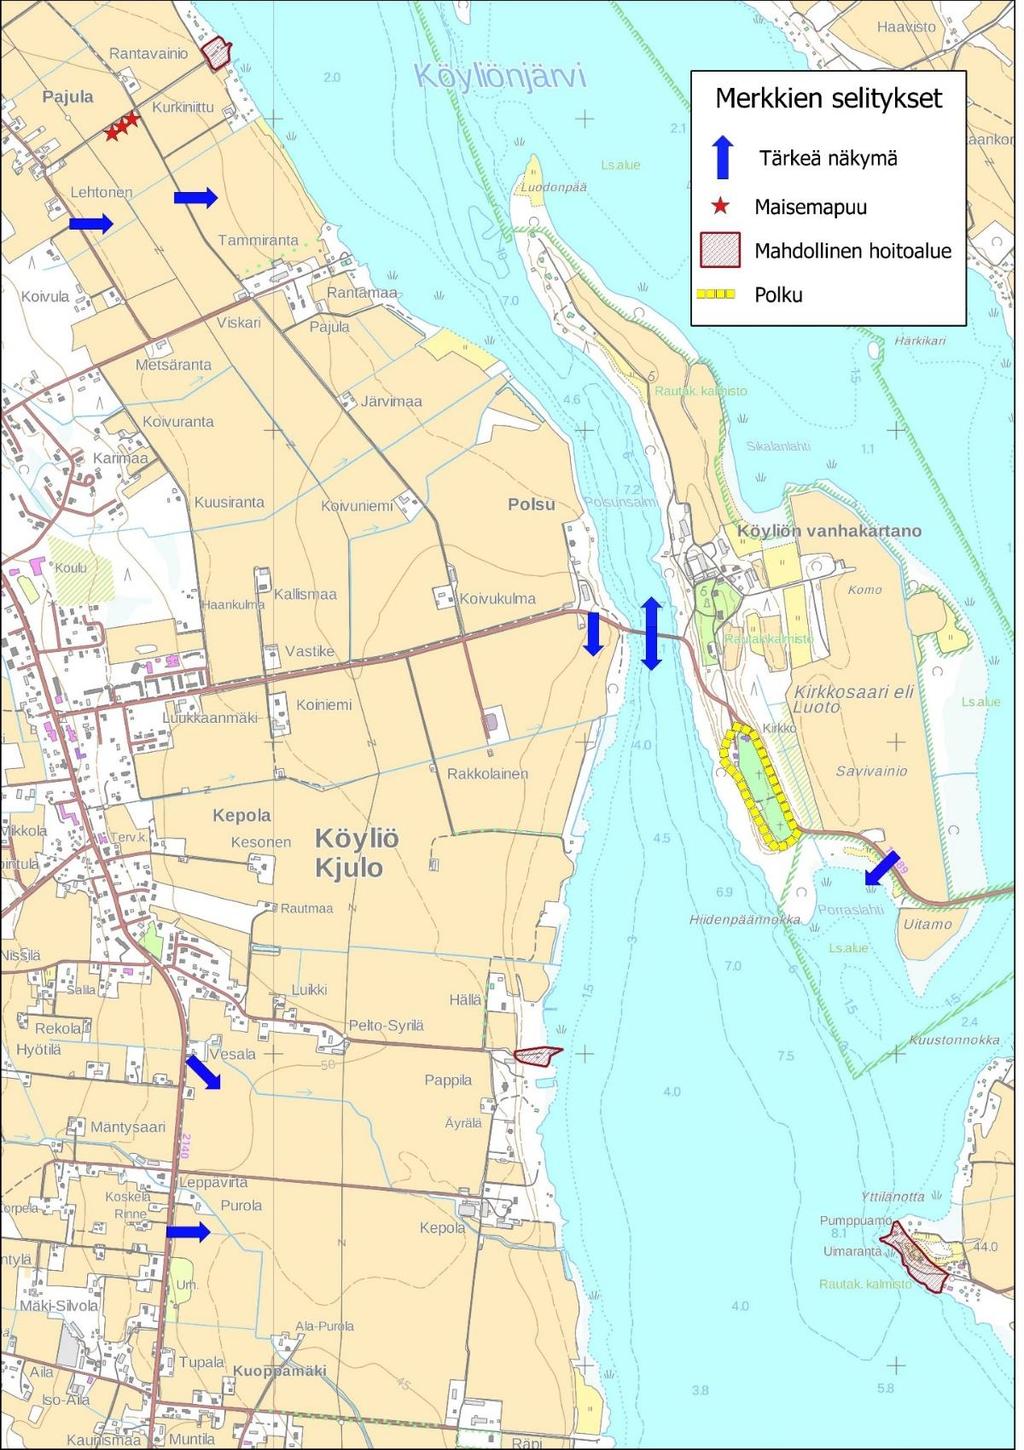 Kepolan kylän kehittämisehdotuksia: Pappilan rannan kohentaminen Kirkkosaareen johtavan koivukujan alkupään puskien